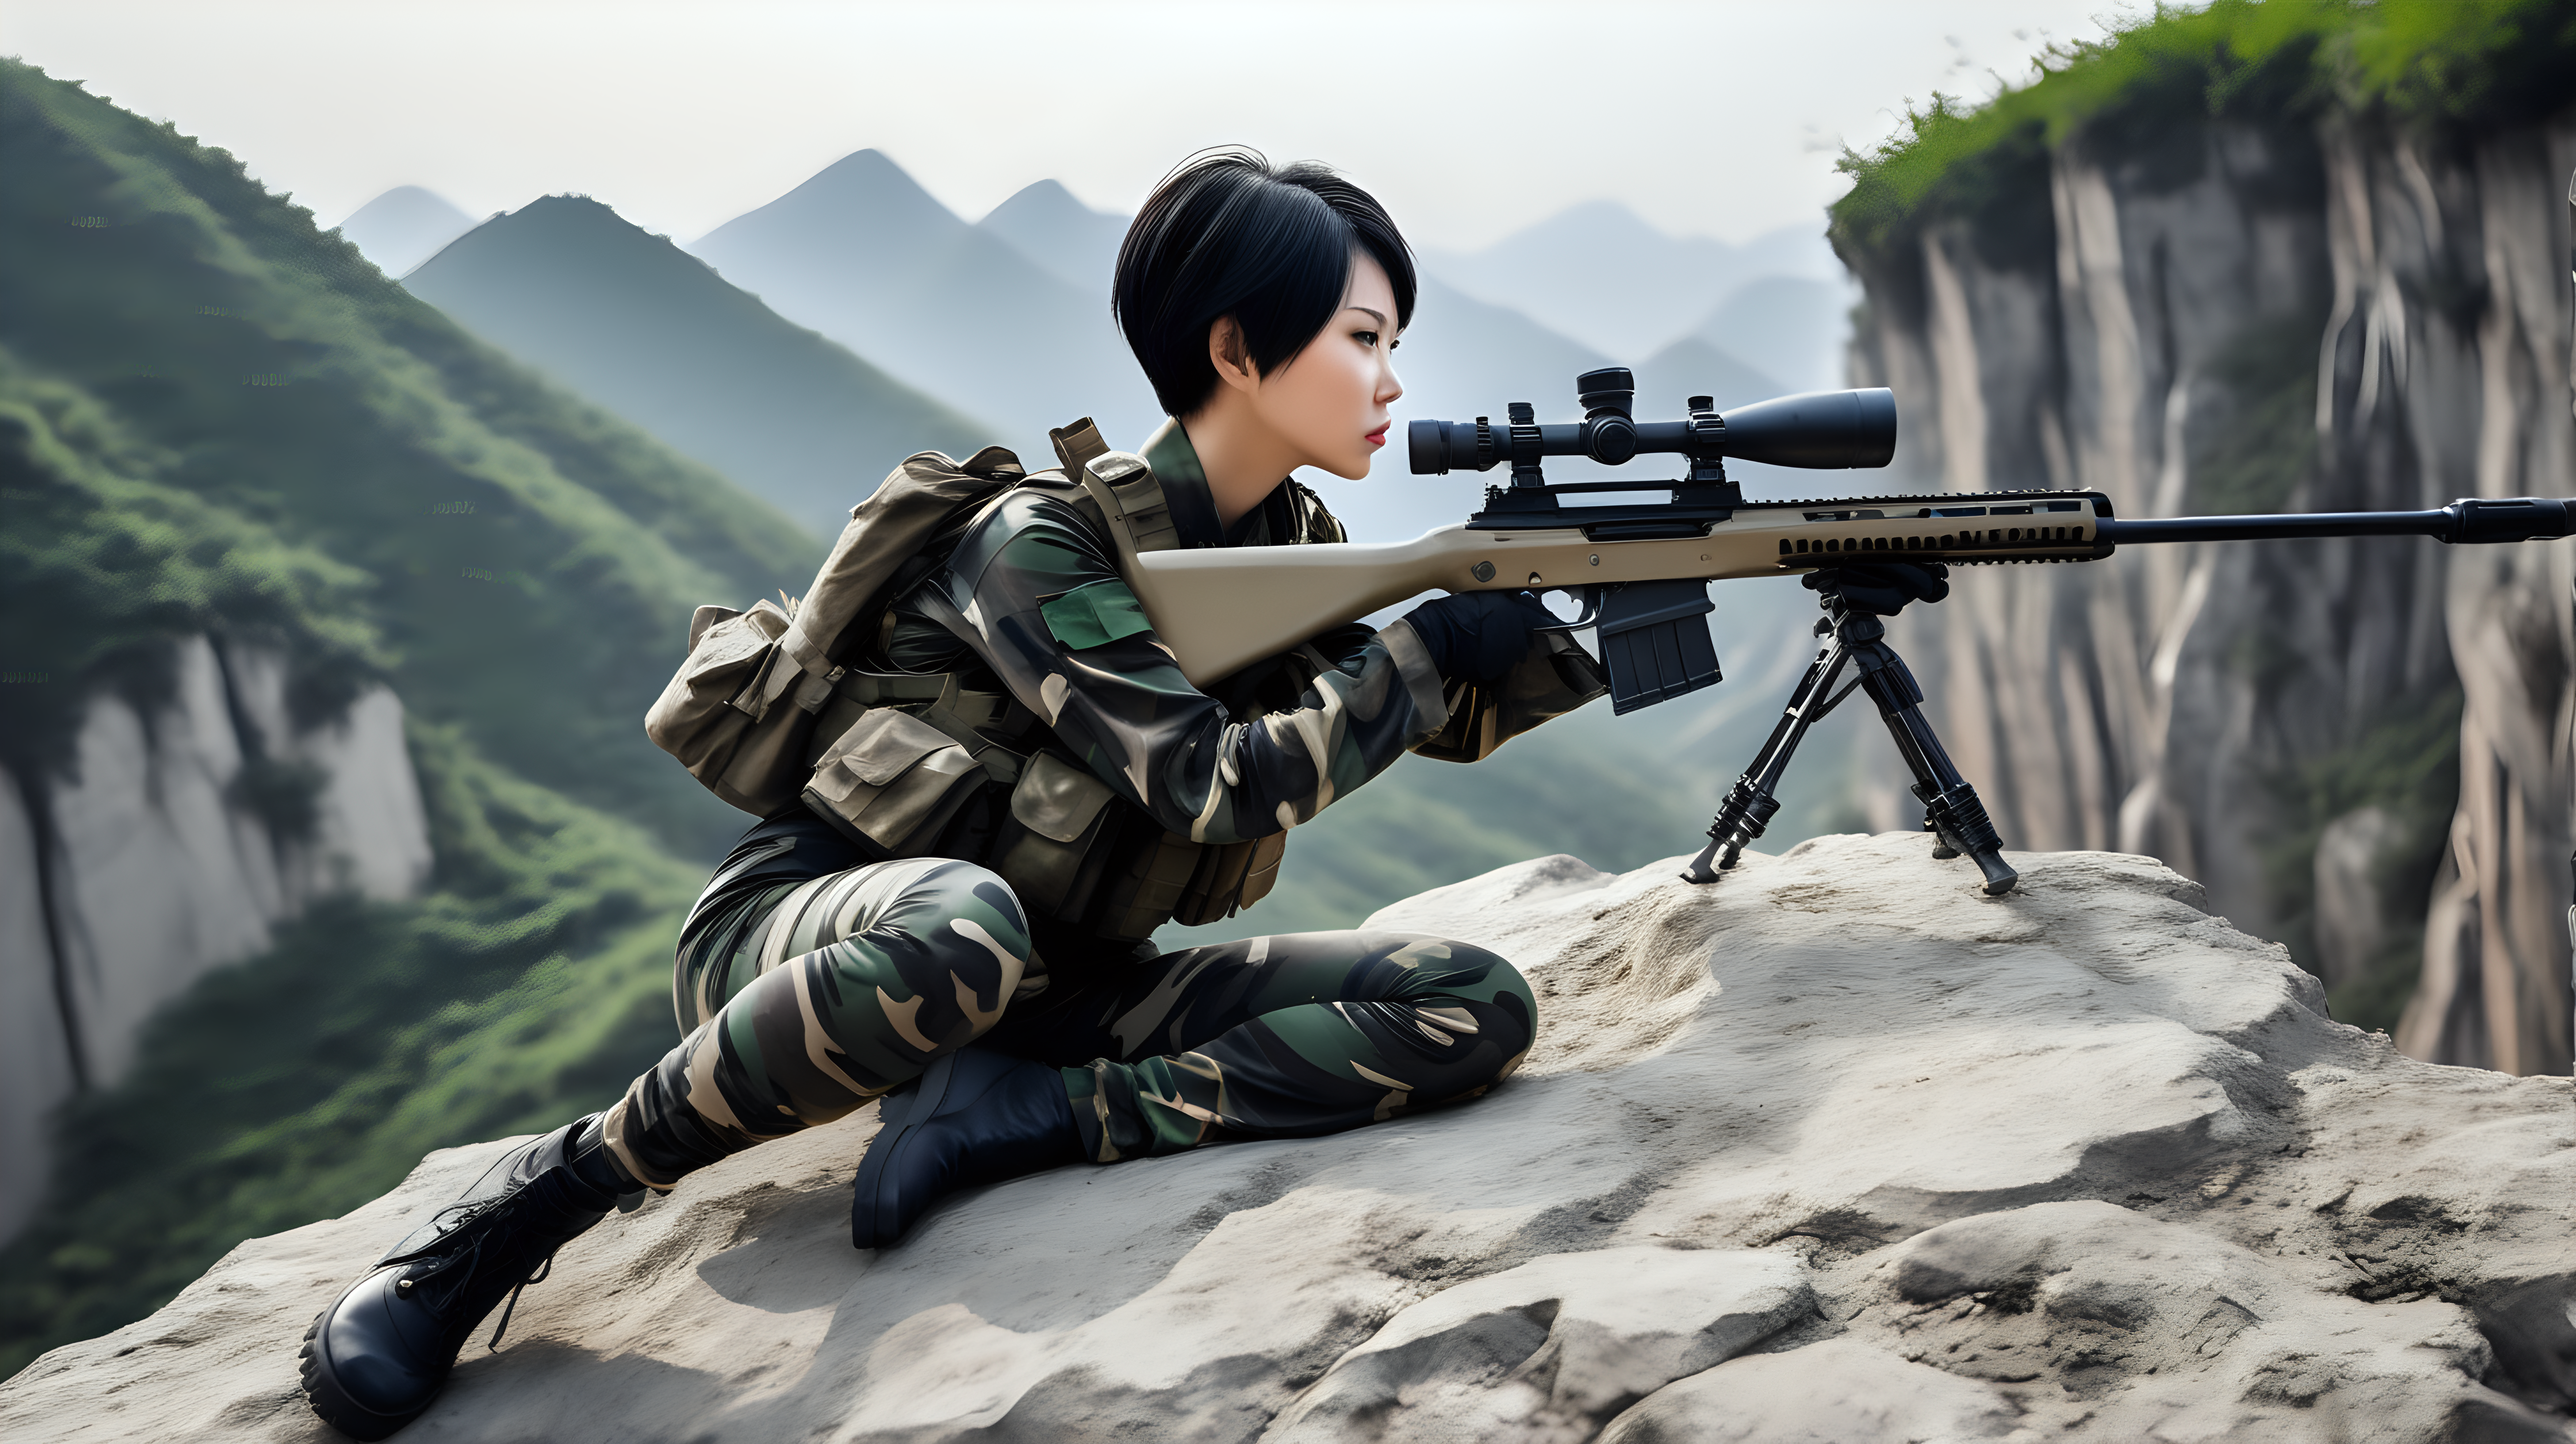 中国女兵
短发
黑发
迷彩紧身裤
趴在悬崖边上
用狙击枪瞄准
后侧视角